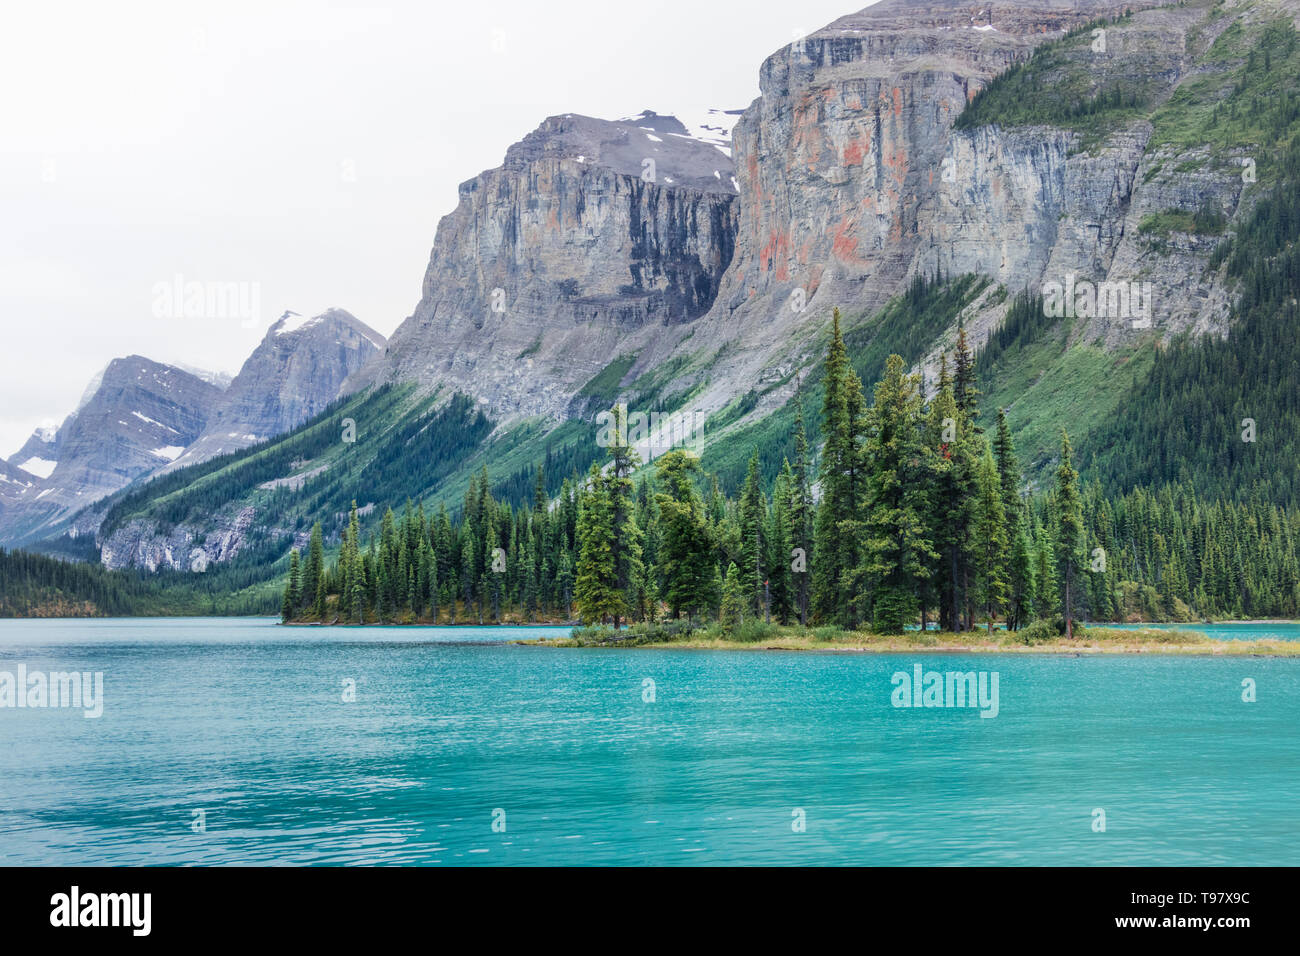 Ungewöhnlicher Blick des Geistes Insel und Rocky Mountains - Jasper, Alberta, Kanada Stockfoto